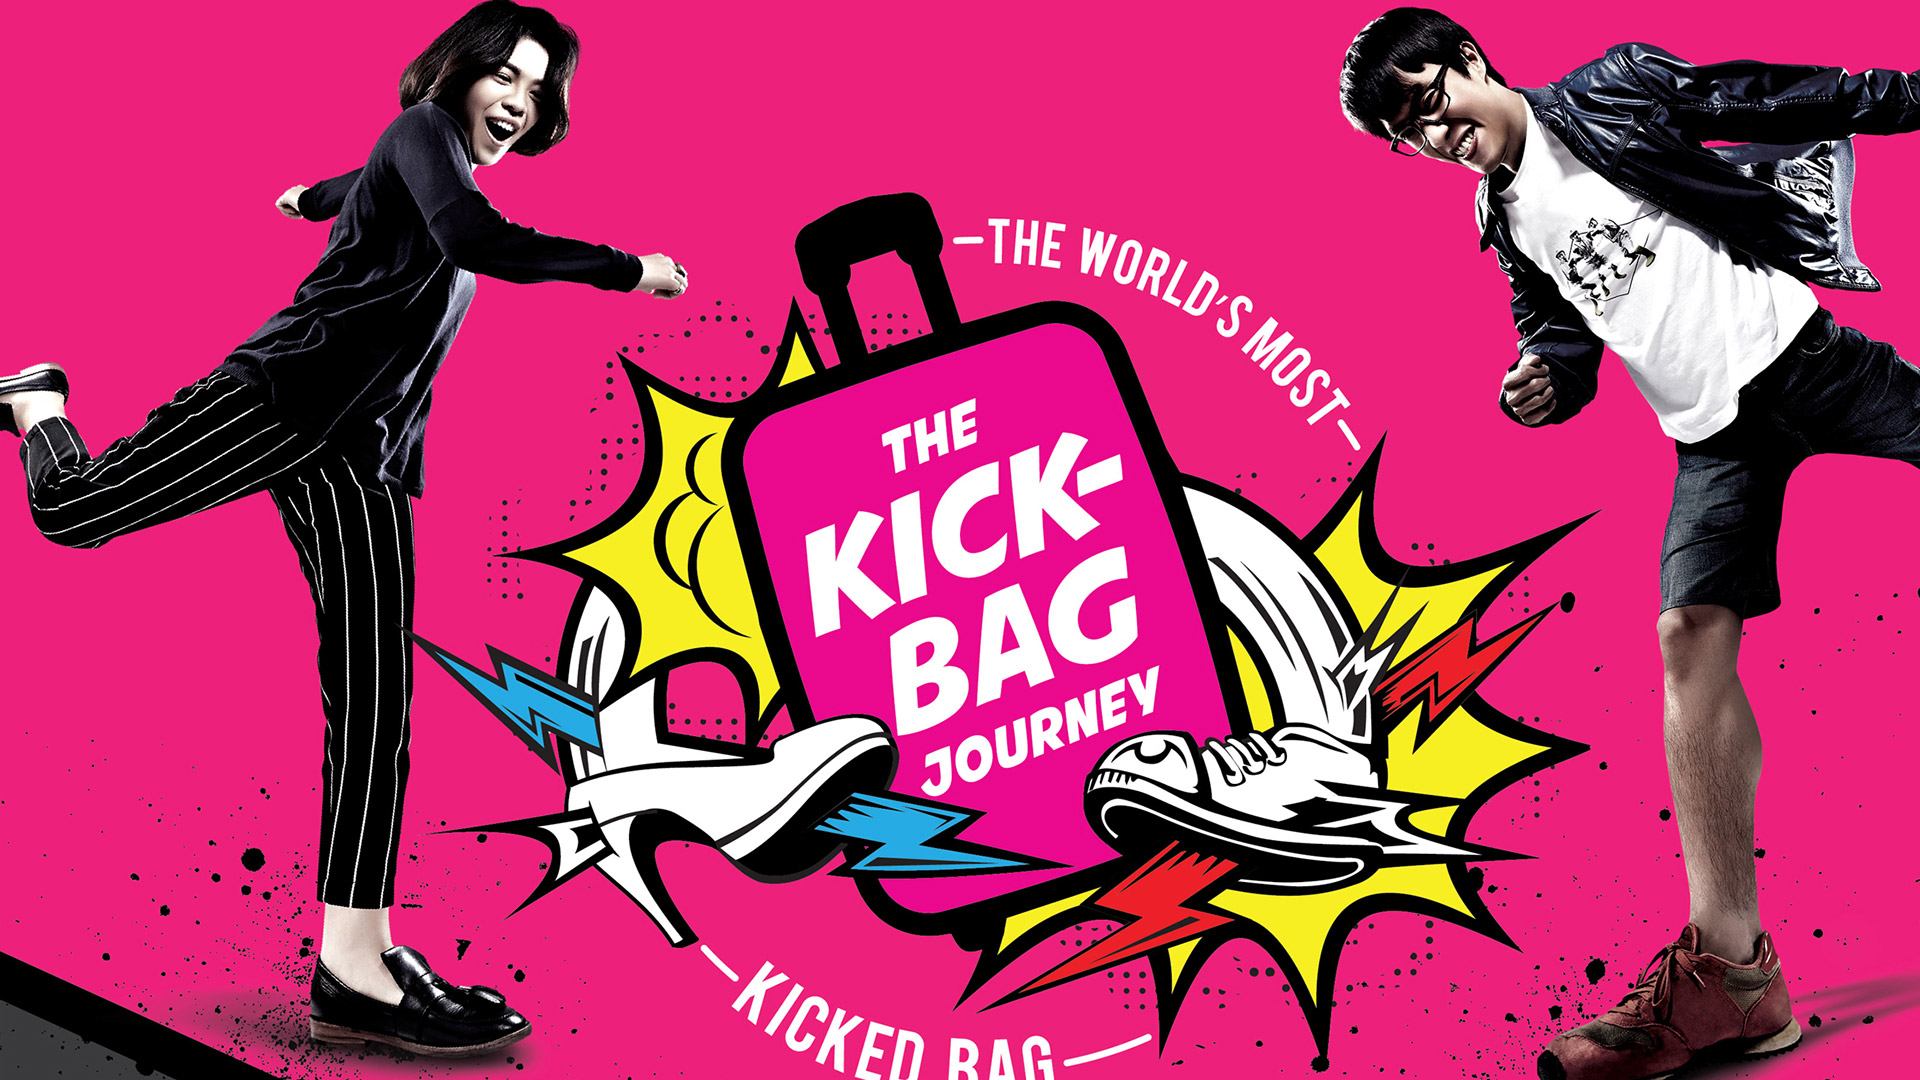 The Kick-Bag Journey